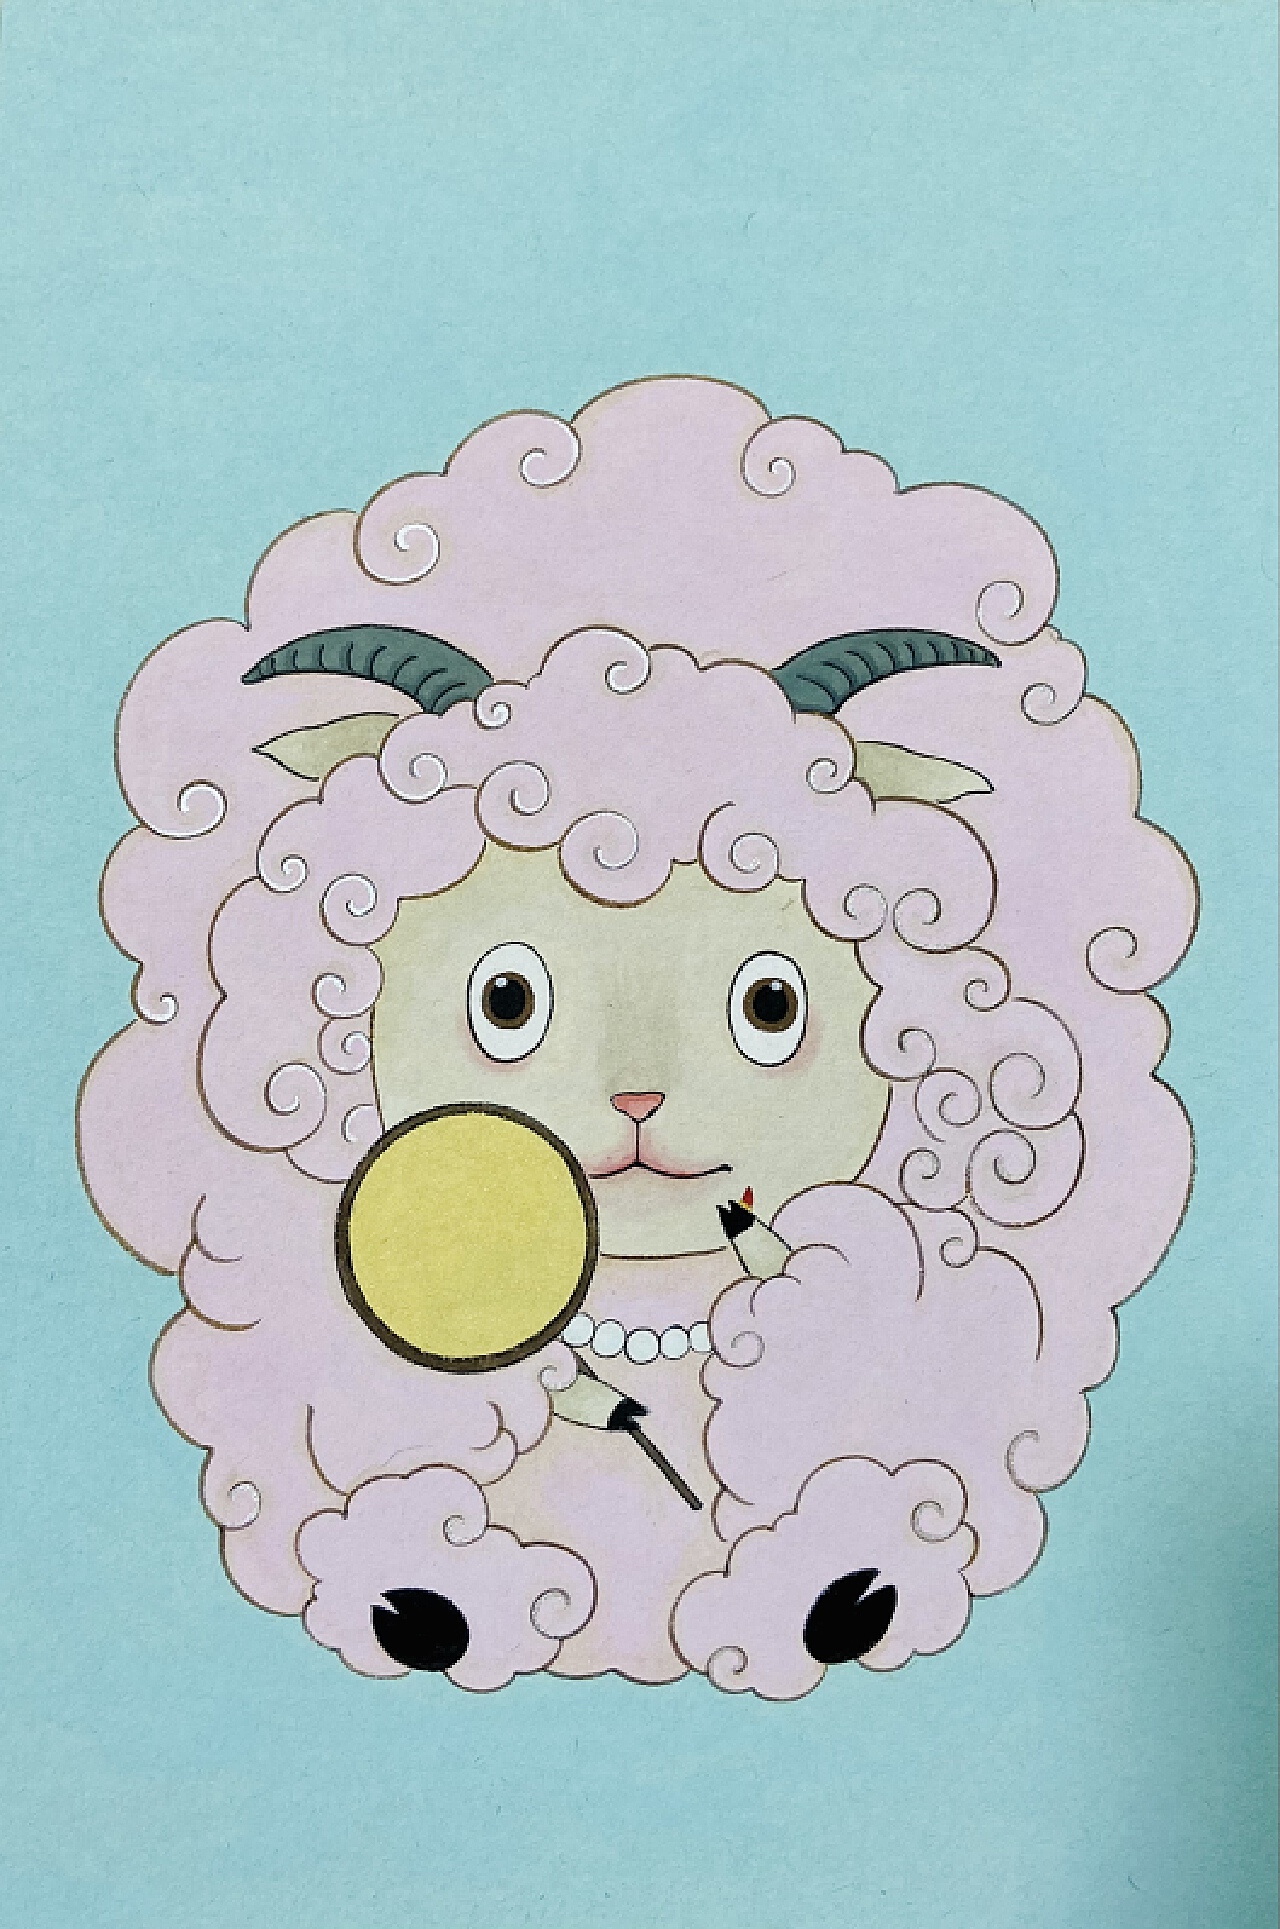 美羊羊 喜羊羊 沸羊羊 灰太狼 暖羊羊 头像 … - 堆糖，美图壁纸兴趣社区